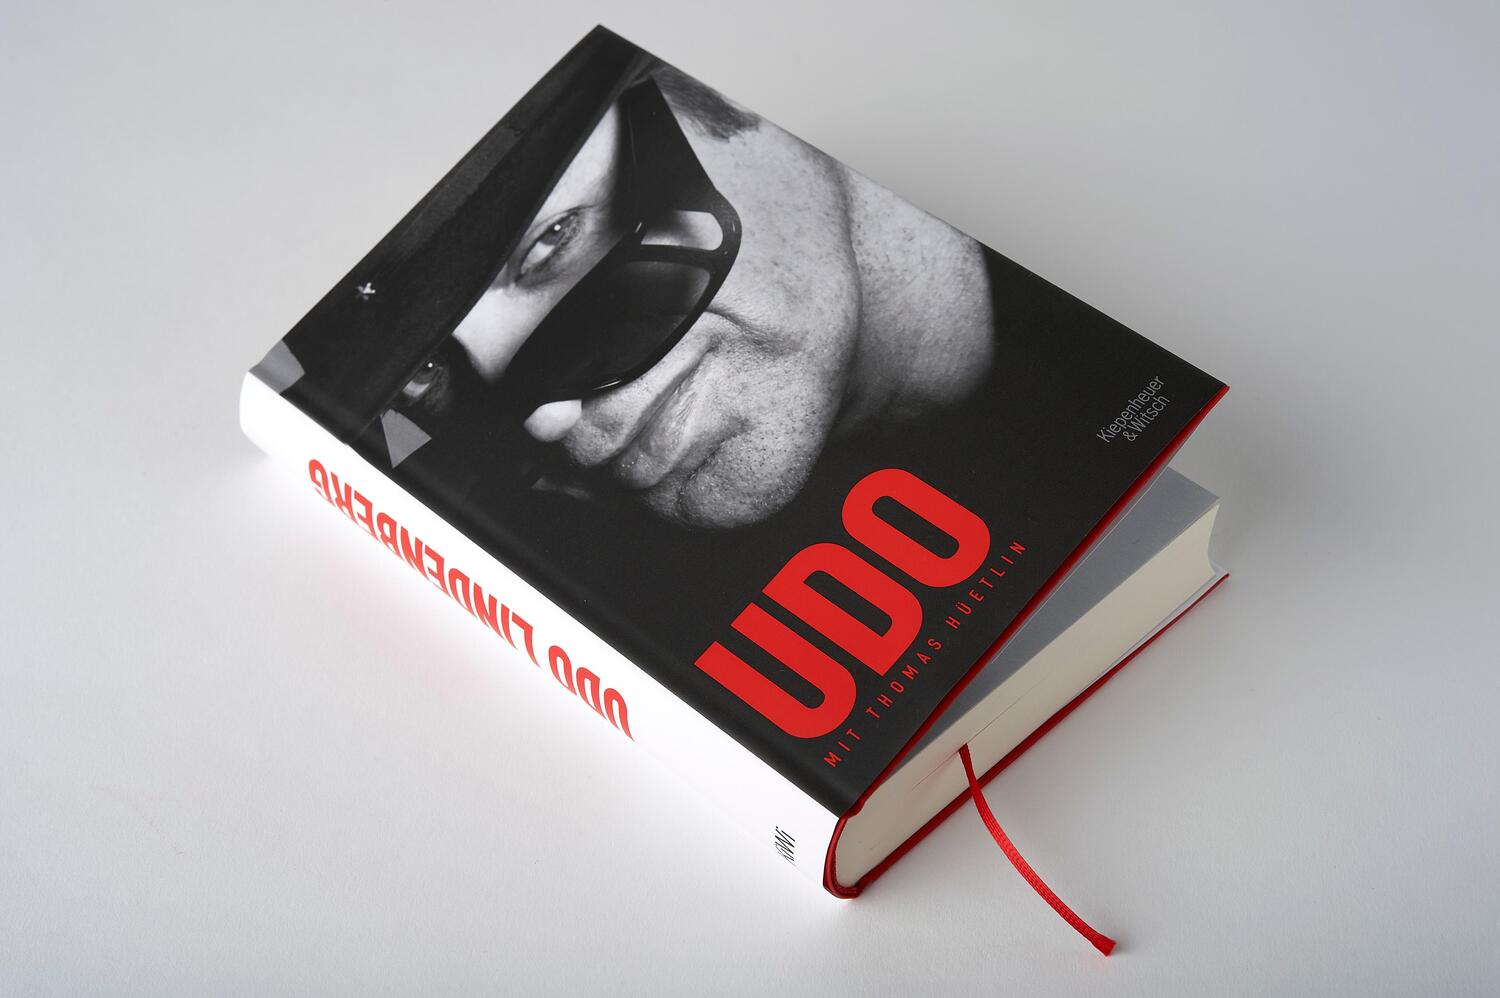 Bild: 9783462050776 | Udo | Udo Lindenberg (u. a.) | Buch | 348 S. | Deutsch | 2018